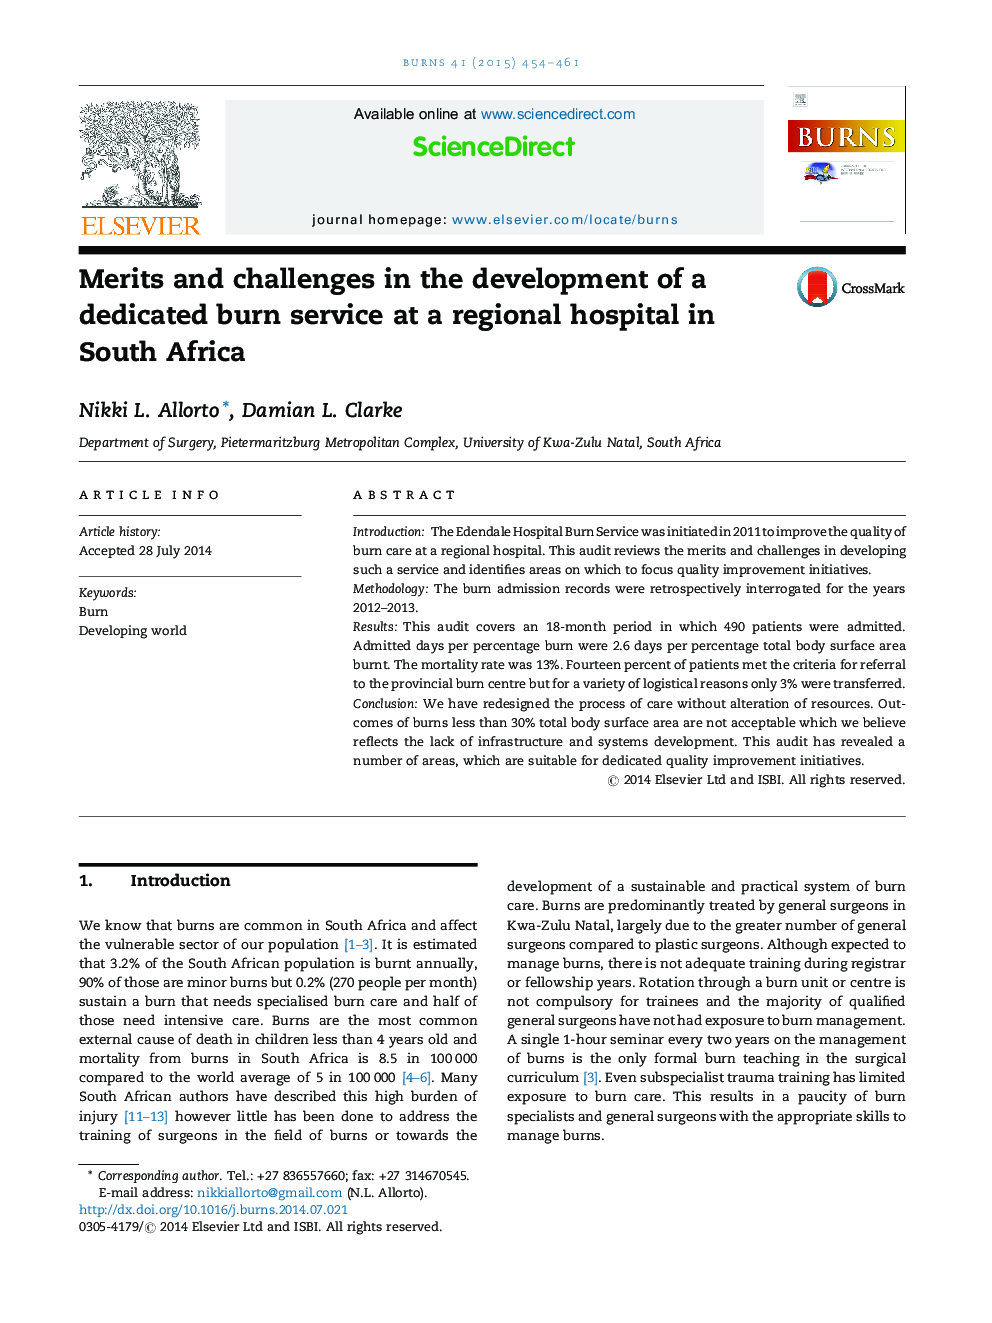 شایستگی ها و چالش ها در توسعه خدمات سوختگی ویژه در یک بیمارستان منطقه ای در آفریقای جنوبی